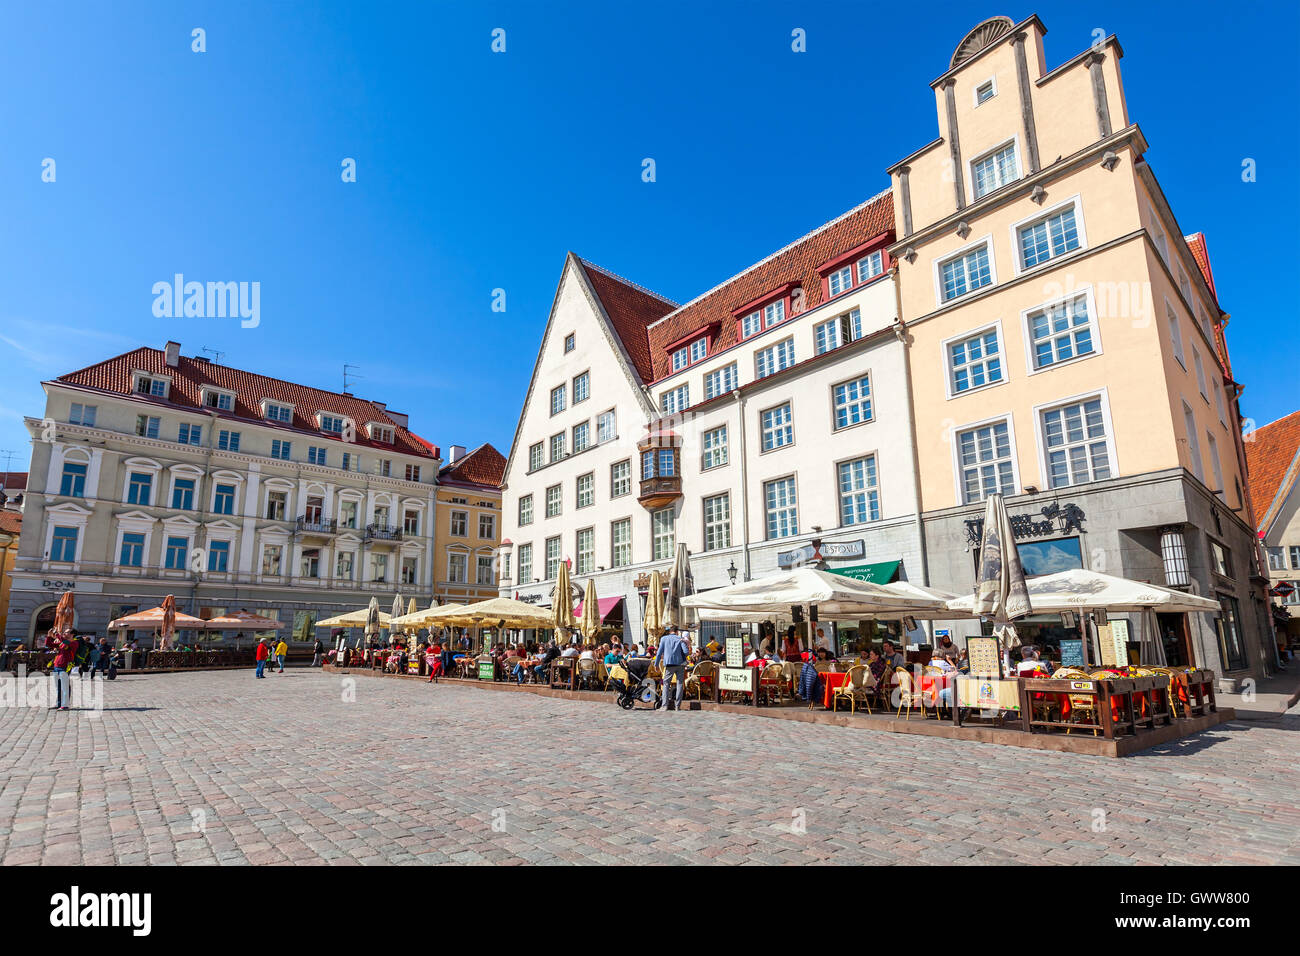 Tallinn, Estonia - May 2, 2016: Tourists in restaurants on Town Hall square in old Tallinn Stock Photo